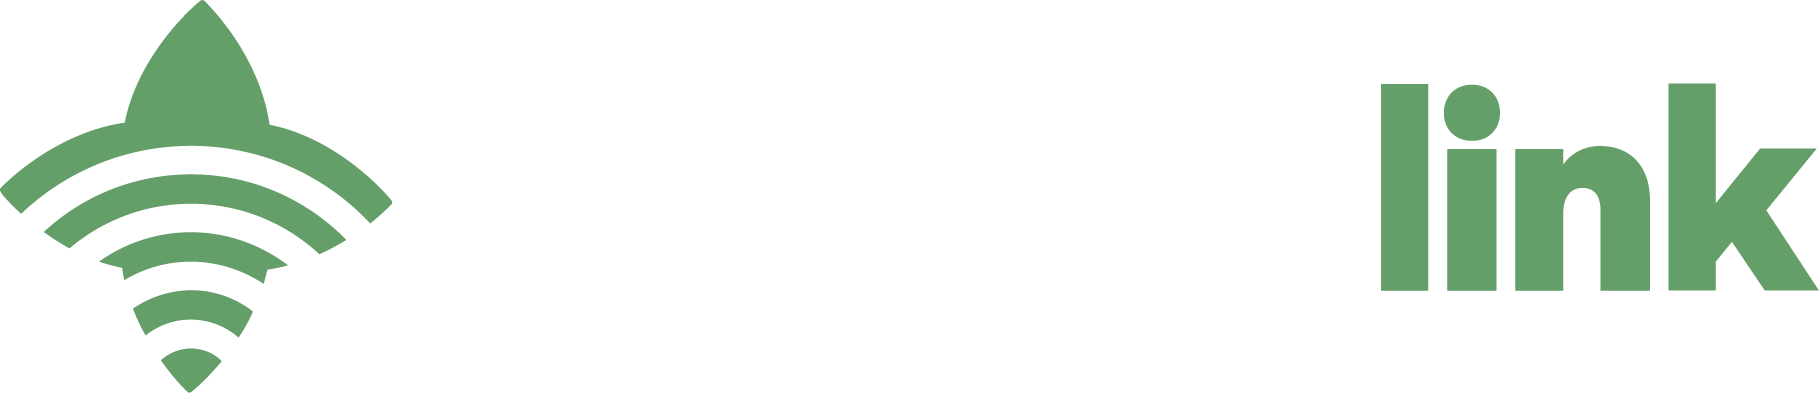 Minerallink logo